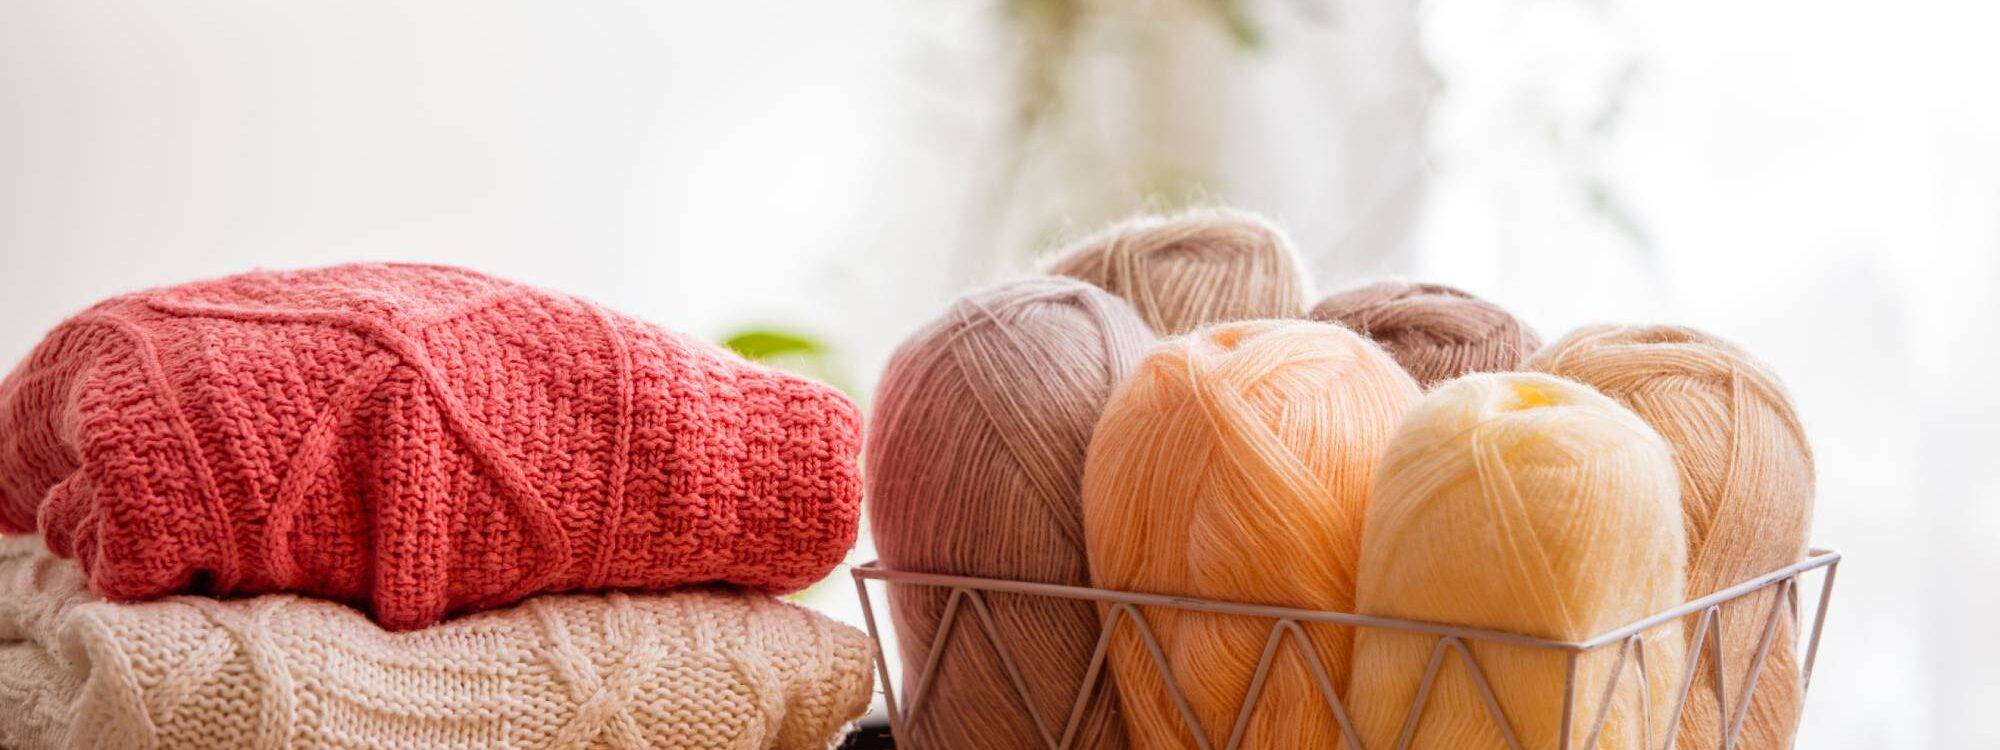 Choisir ses aiguilles pour le tricot : les éléments à prendre en compte